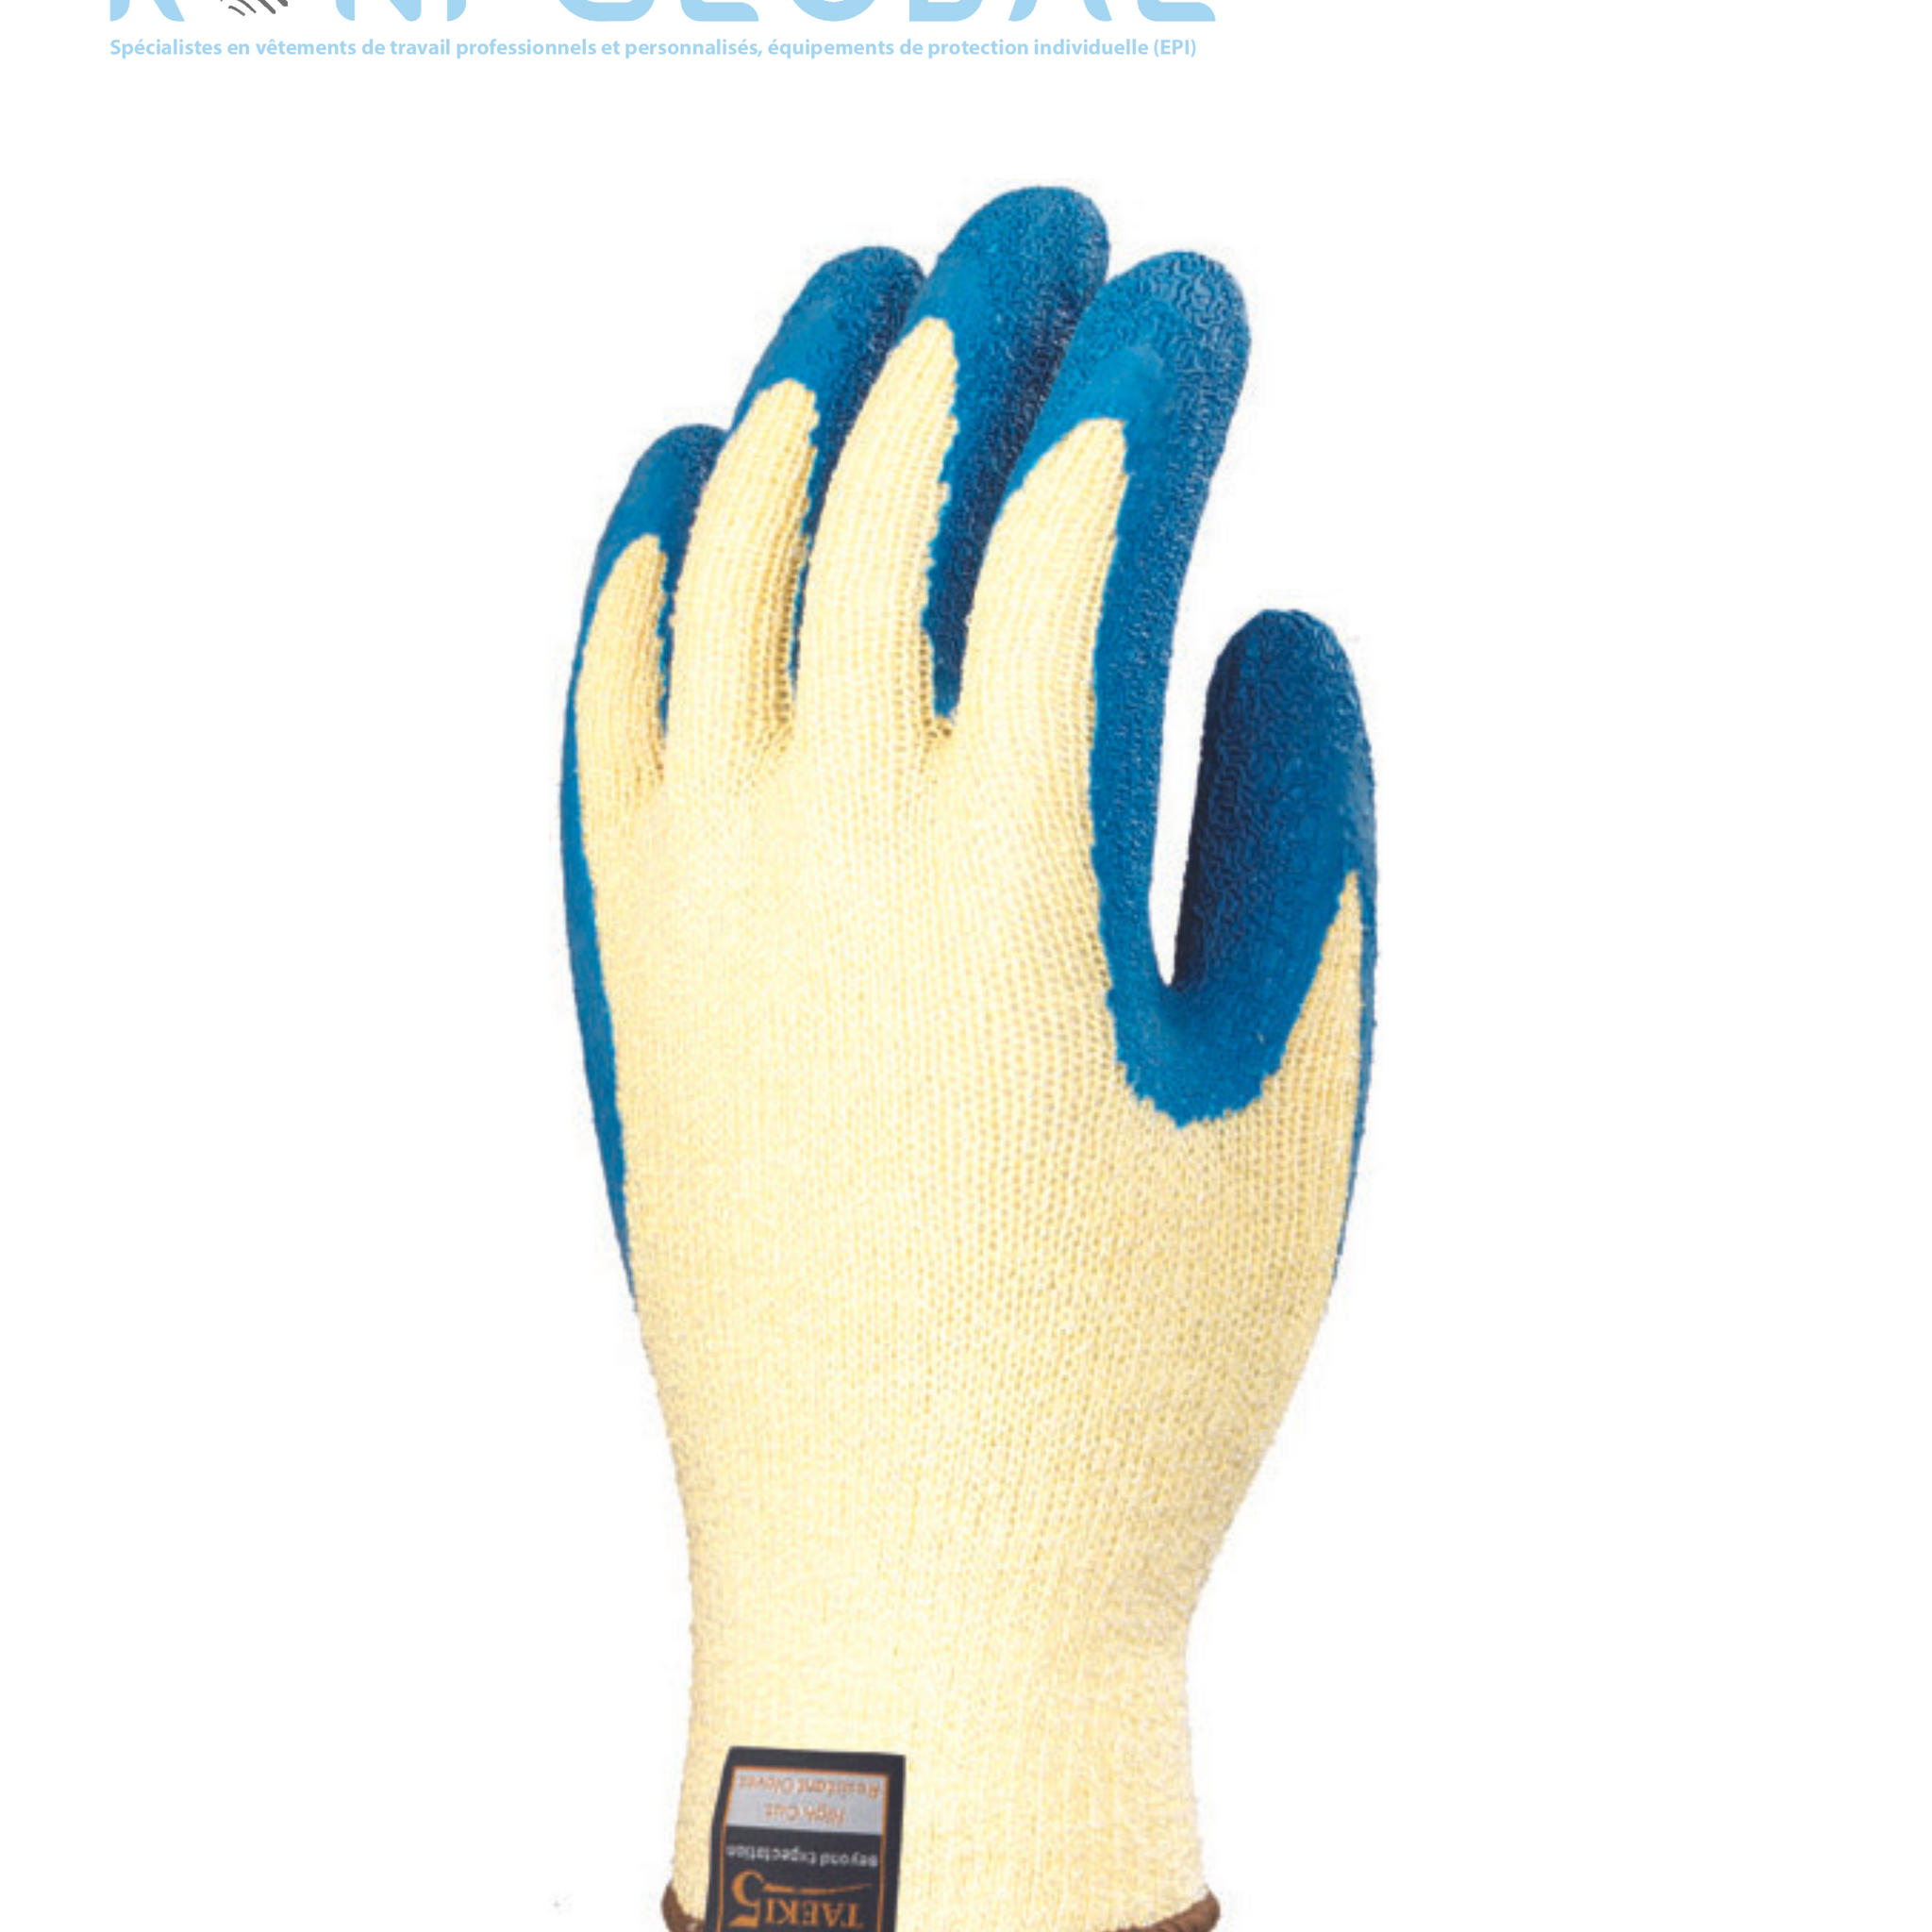 Gant de protection thermique en tricot à base de fibres de verre/fibres synthétiques/élasthanne enduit au latex anti-chaleur et anti-coupure CUT C HOT 2 - EUROHEAT 7070 COVERGUARD (boîte de 10 paires)